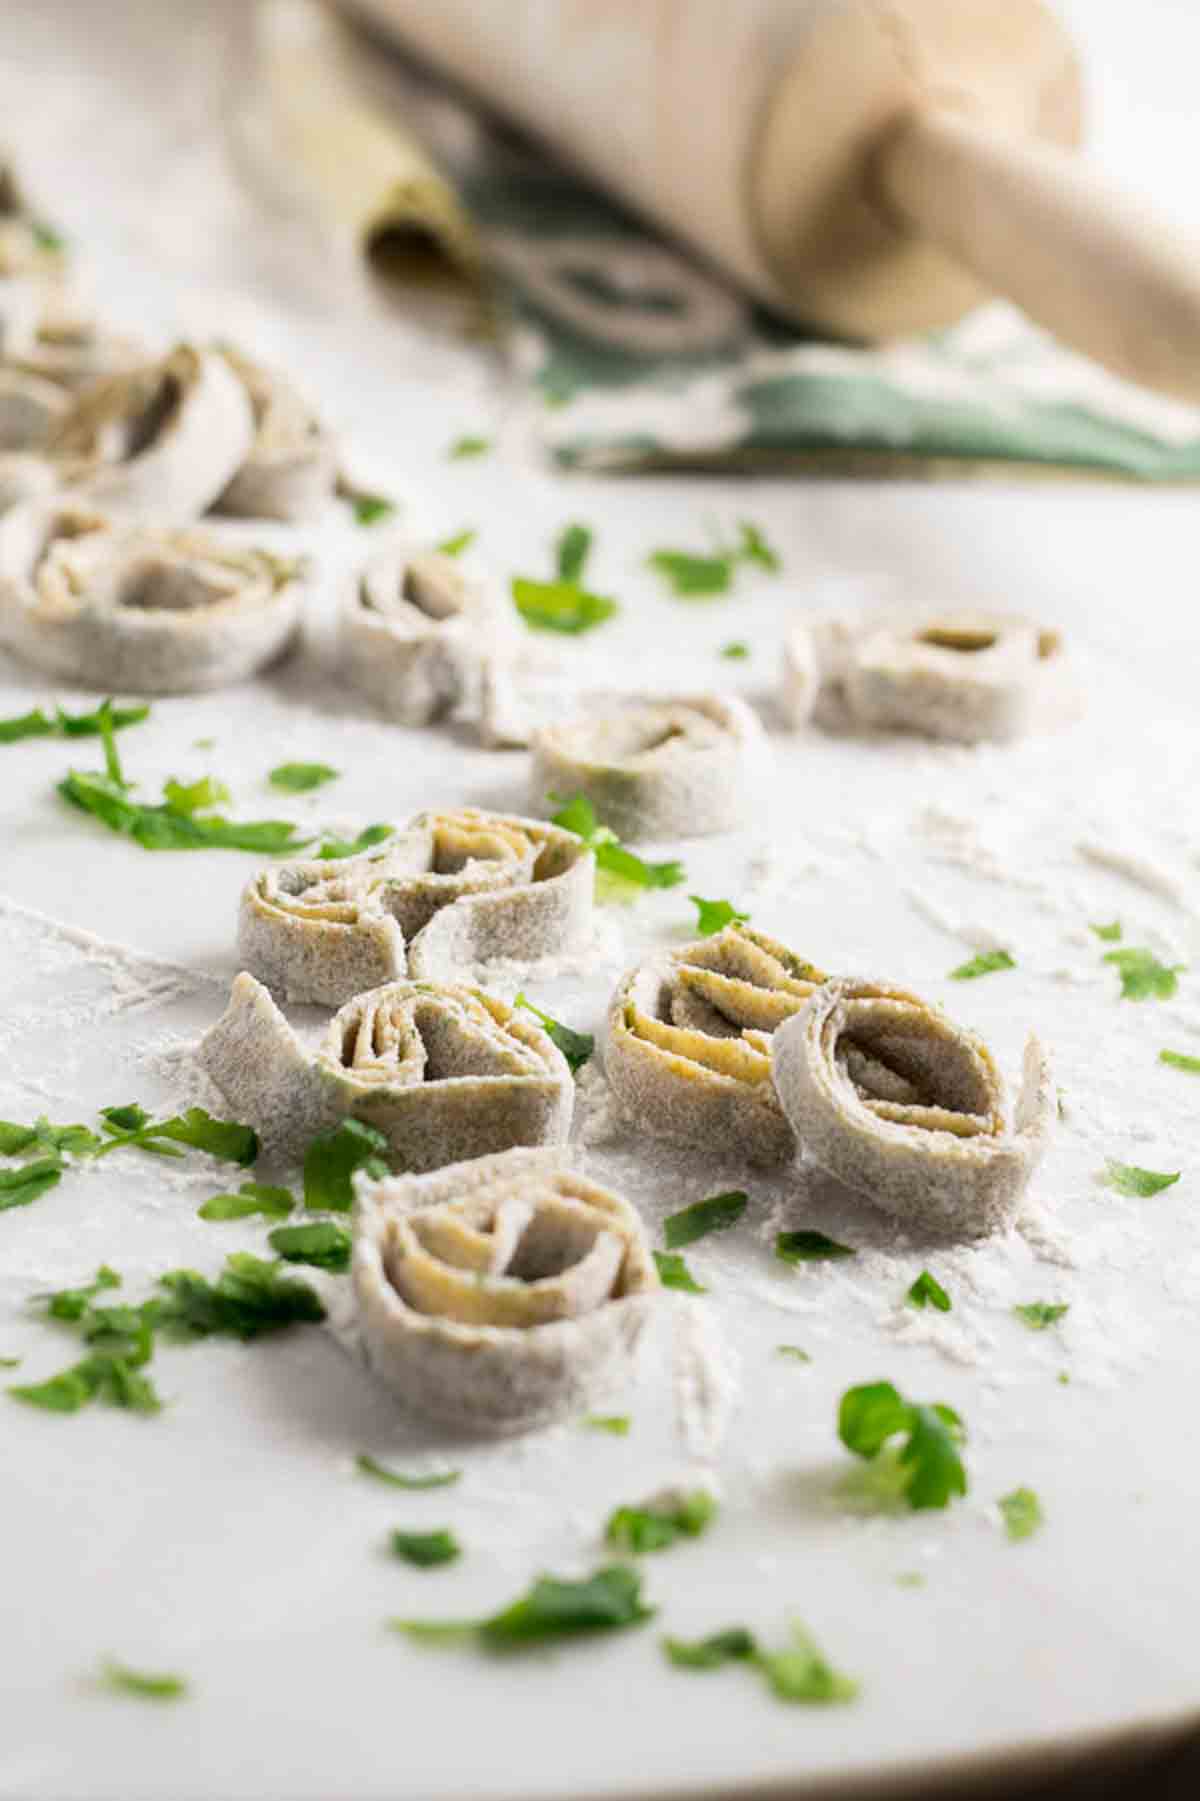 Selbstgemachte Tagliatelle mit Kräutern | Homemade whole wheat pasta